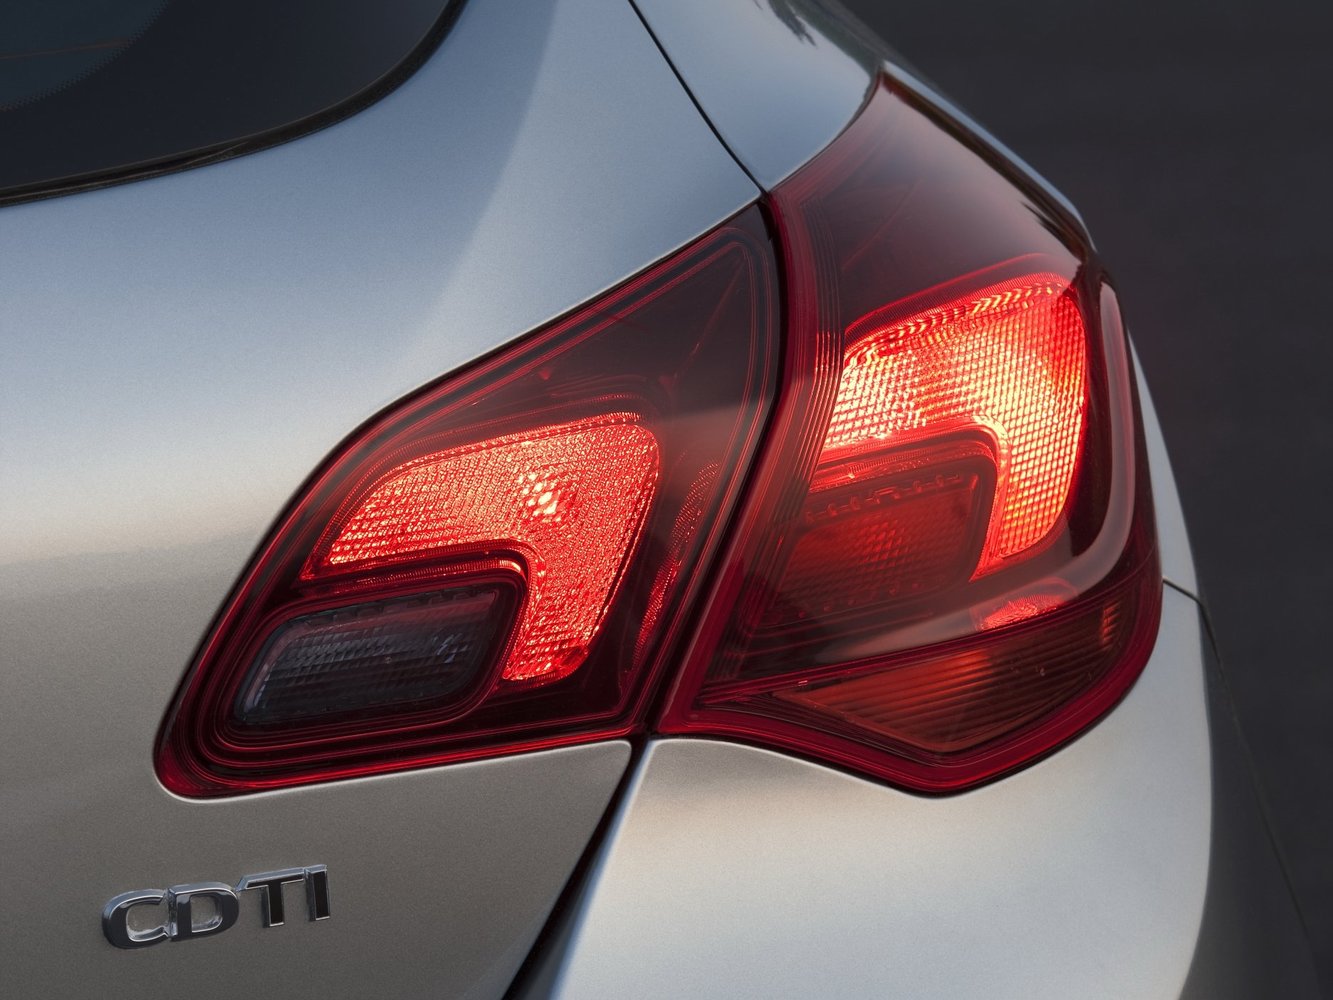 хэтчбек 5 дв. Opel Astra 2012 - 2016г выпуска модификация 1.2 MT (95 л.с.)